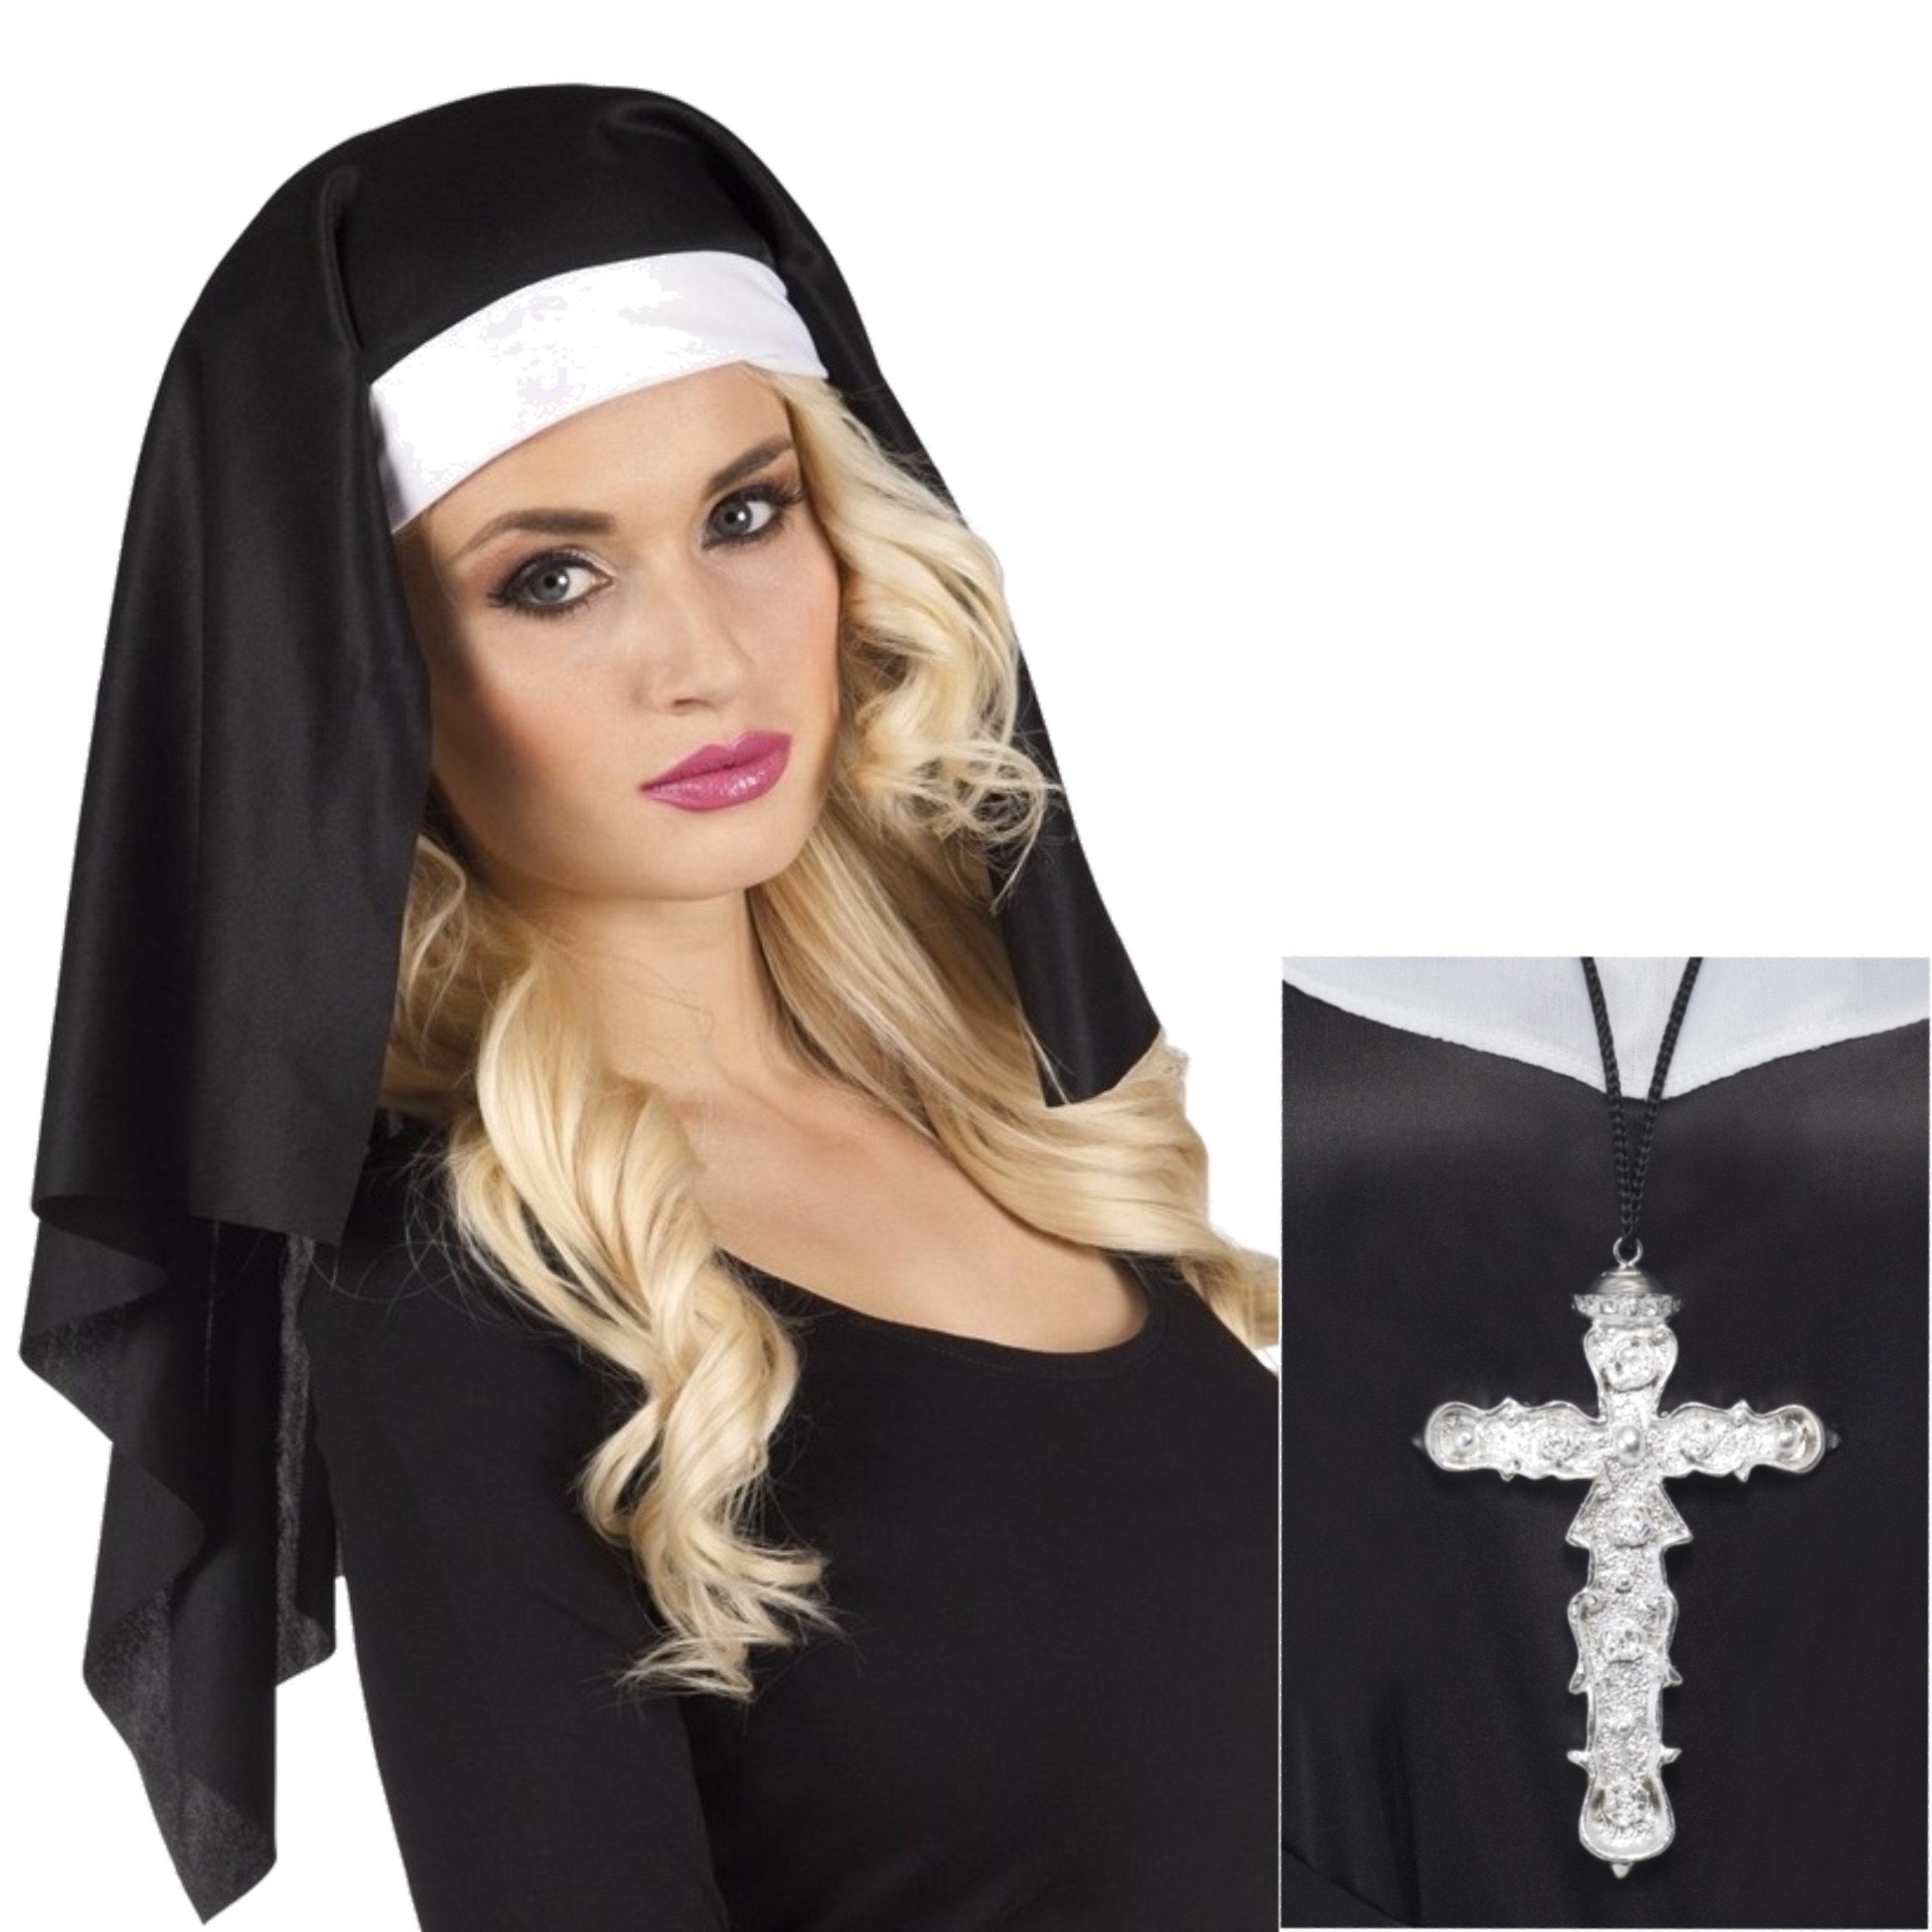 2x stuks nonnen carnaval verkleed setje van hoofdkap kraag en zilveren kruis aan ketting